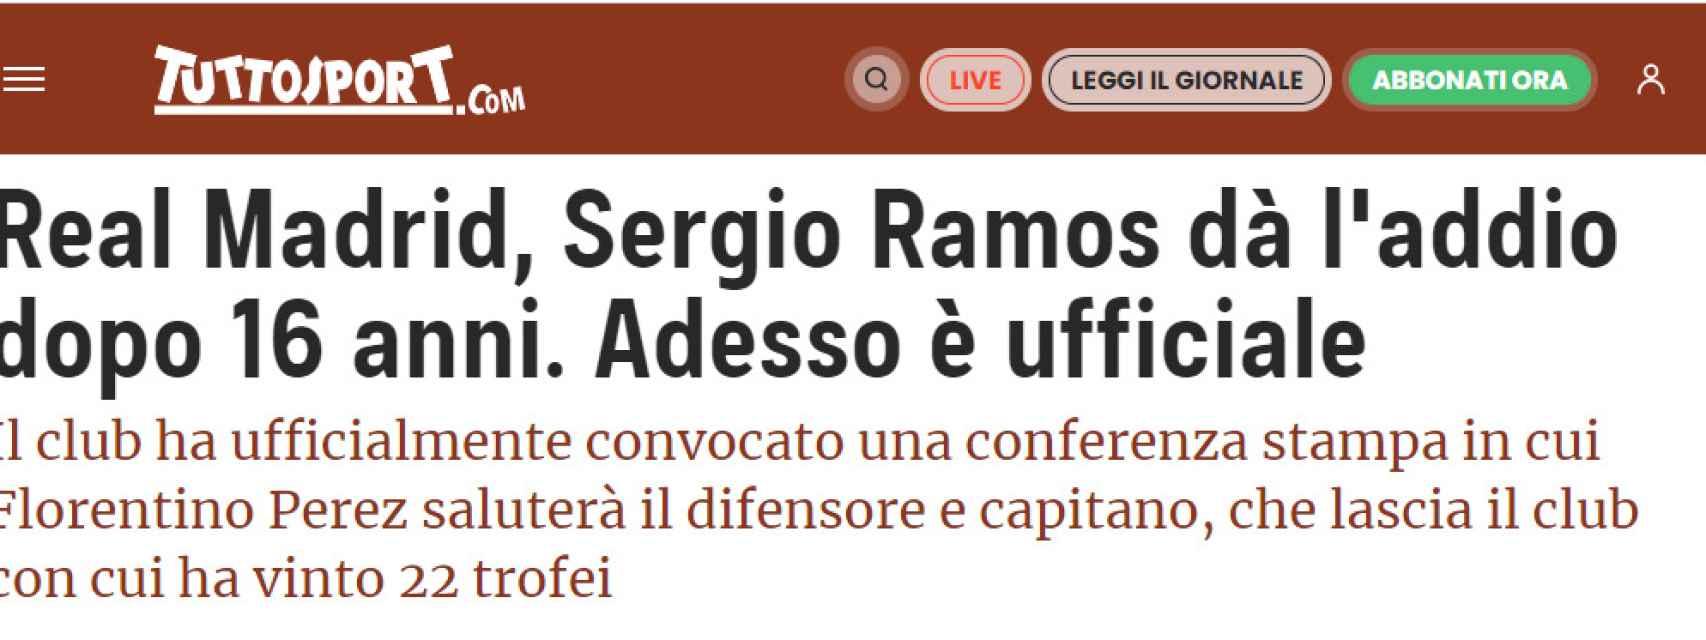 Tuttosport y su noticia sobre Sergio Ramos